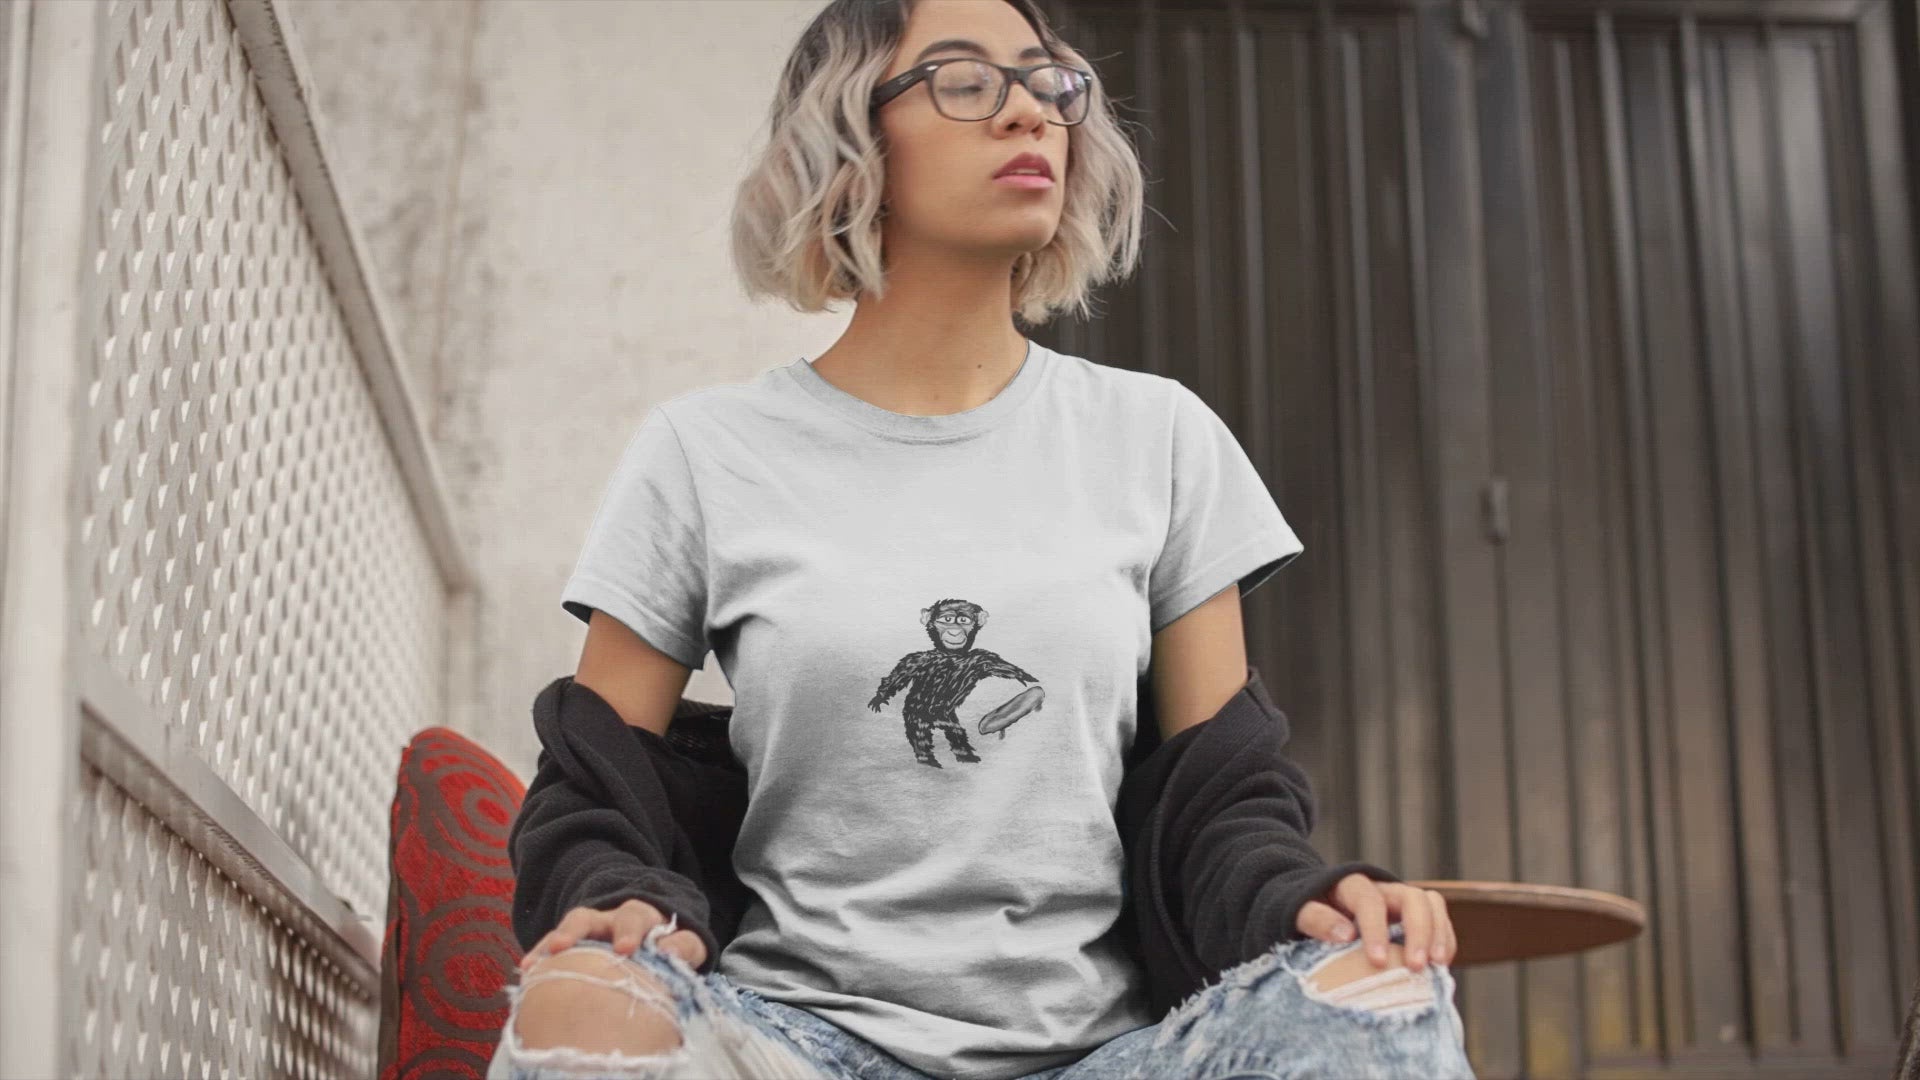 Monkey Skateboard | Women's 100% Organic Cotton T Shirt worn by a woman sat outside